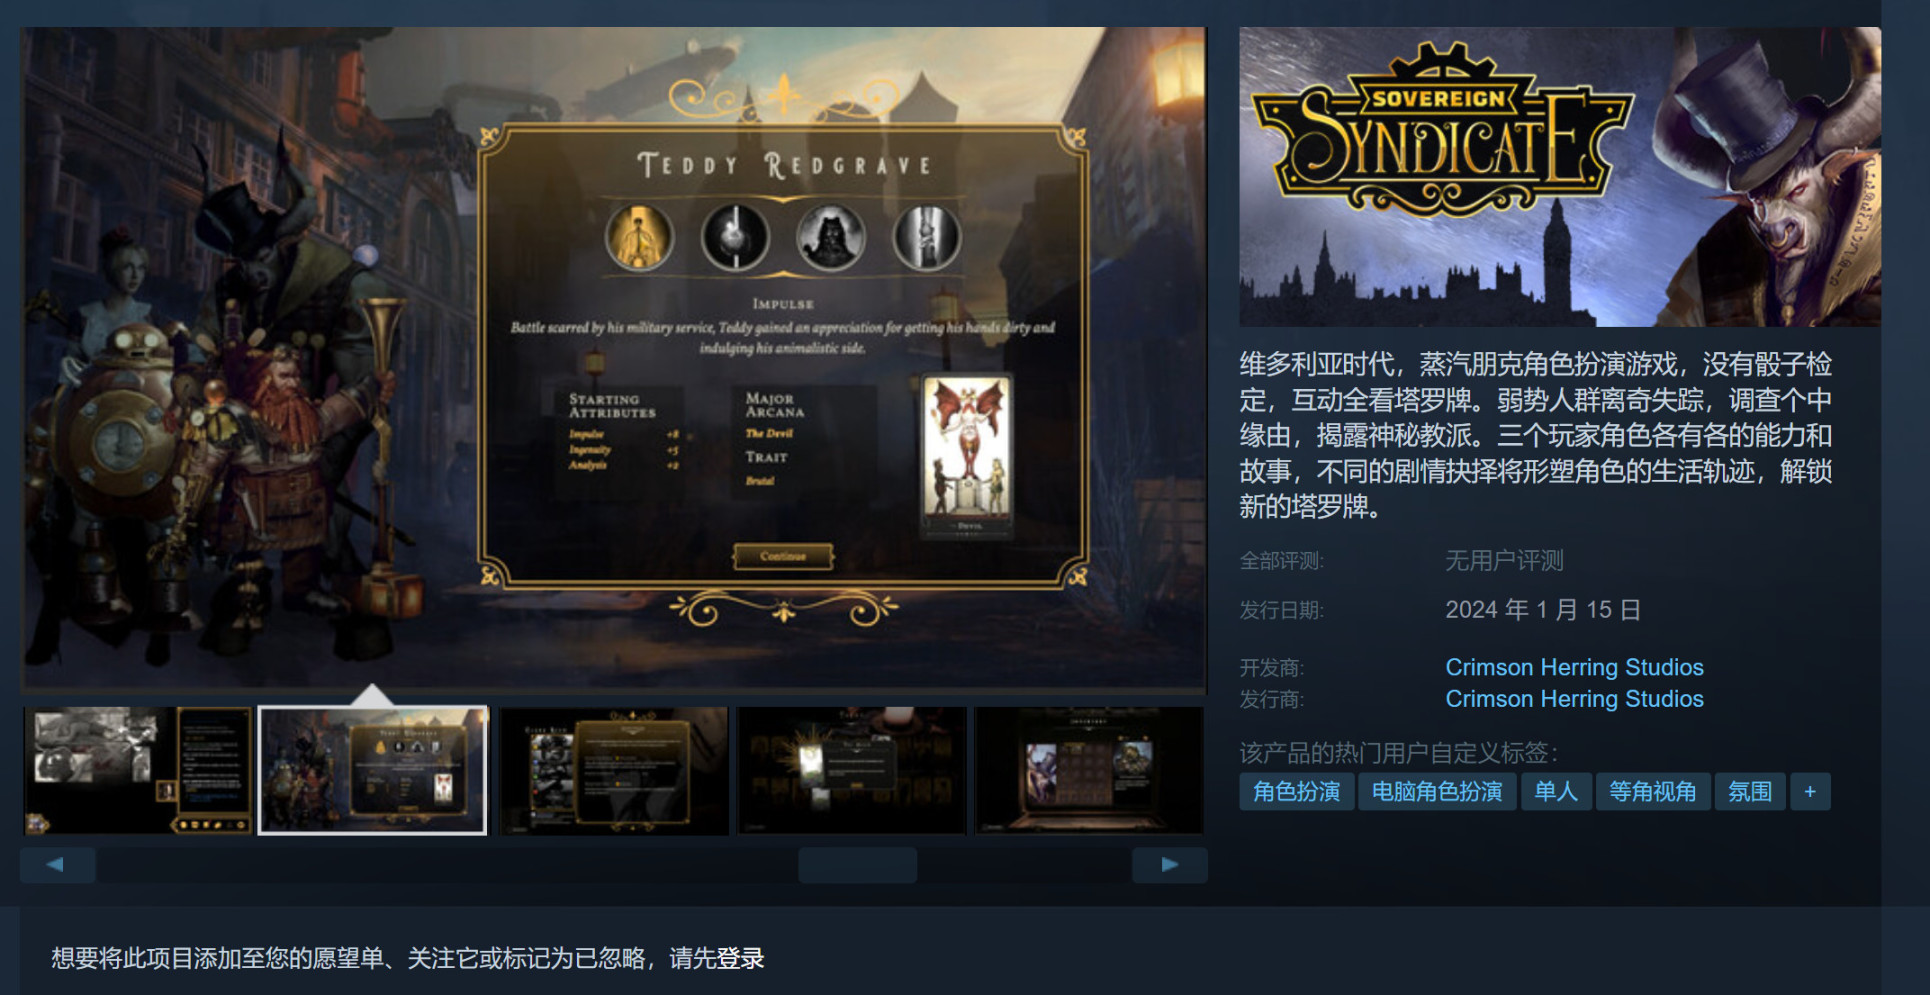 【PC游戏】蒸汽朋克CRPG《主权辛迪加》Steam页面上线